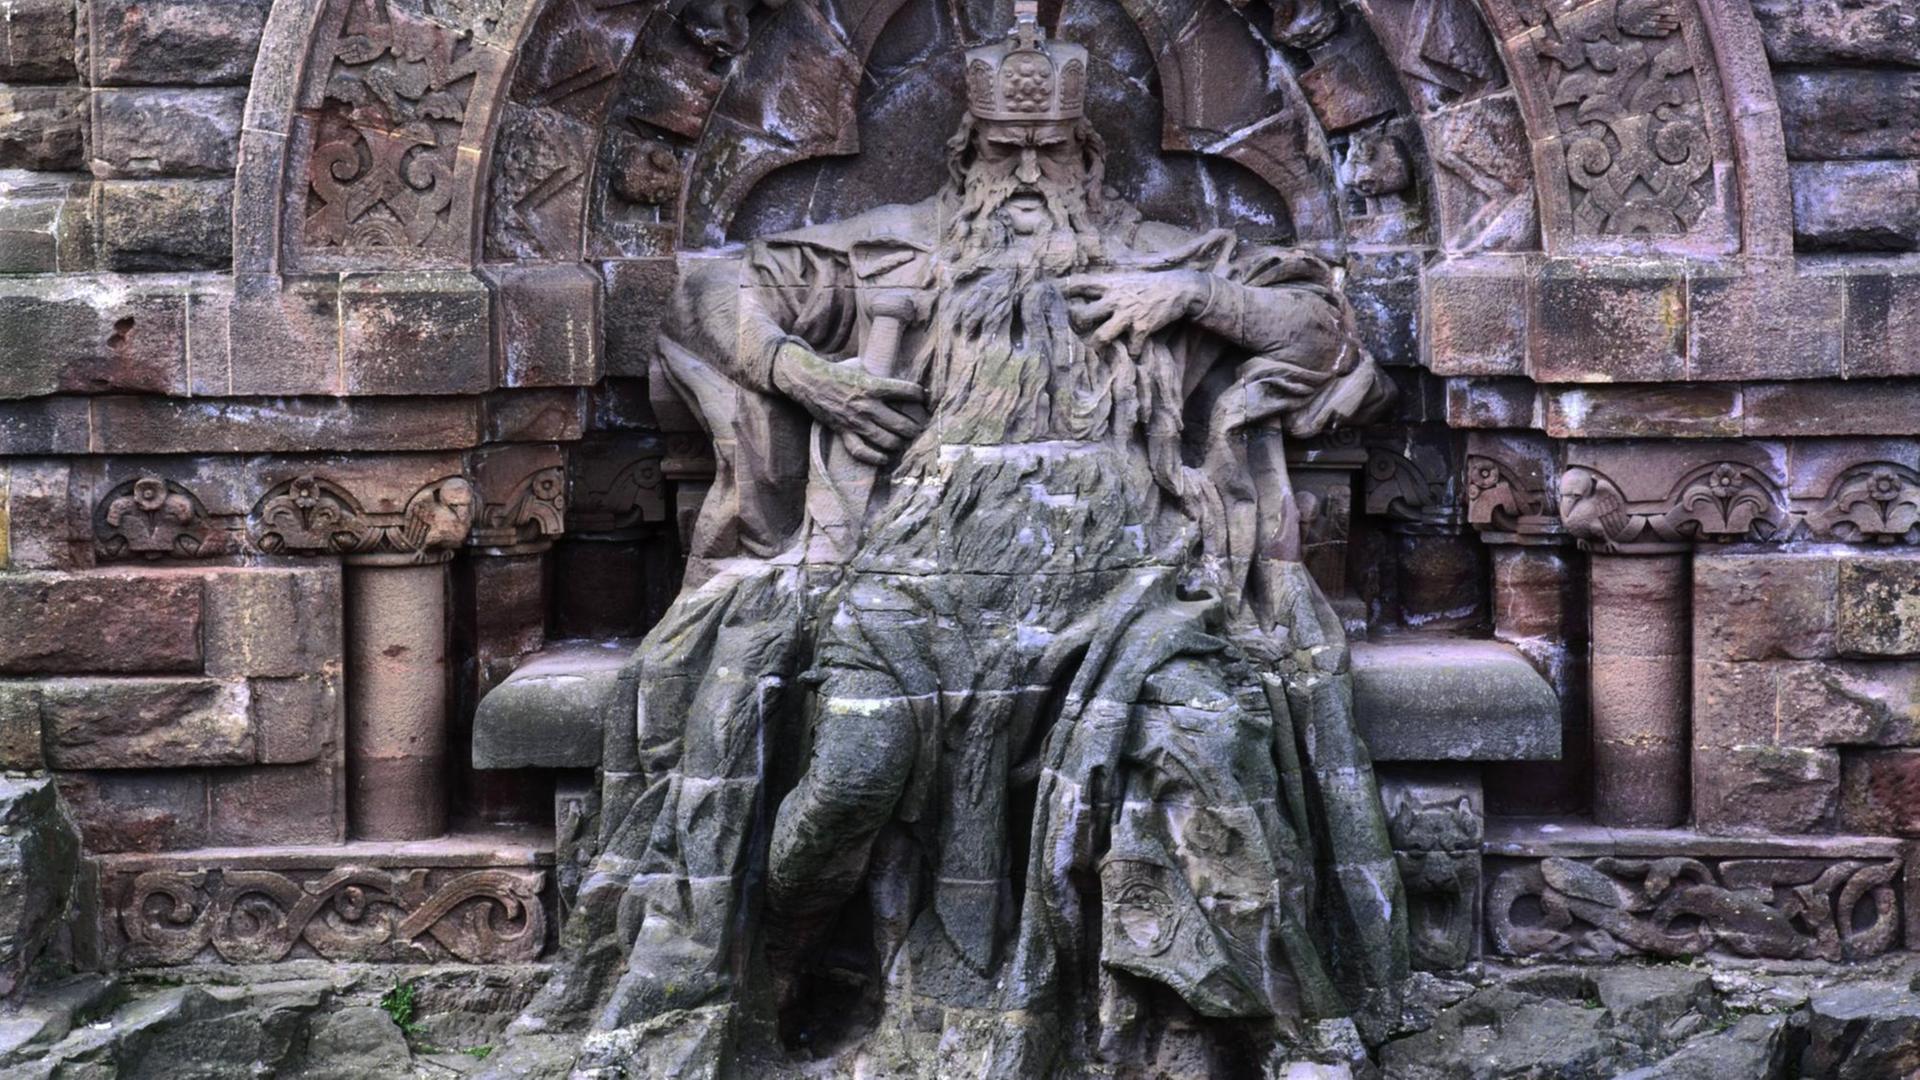 Die Skulptur am Kyffhäuser-Denkmal zeigt Kaiser Friedrich I. Barbarossa.